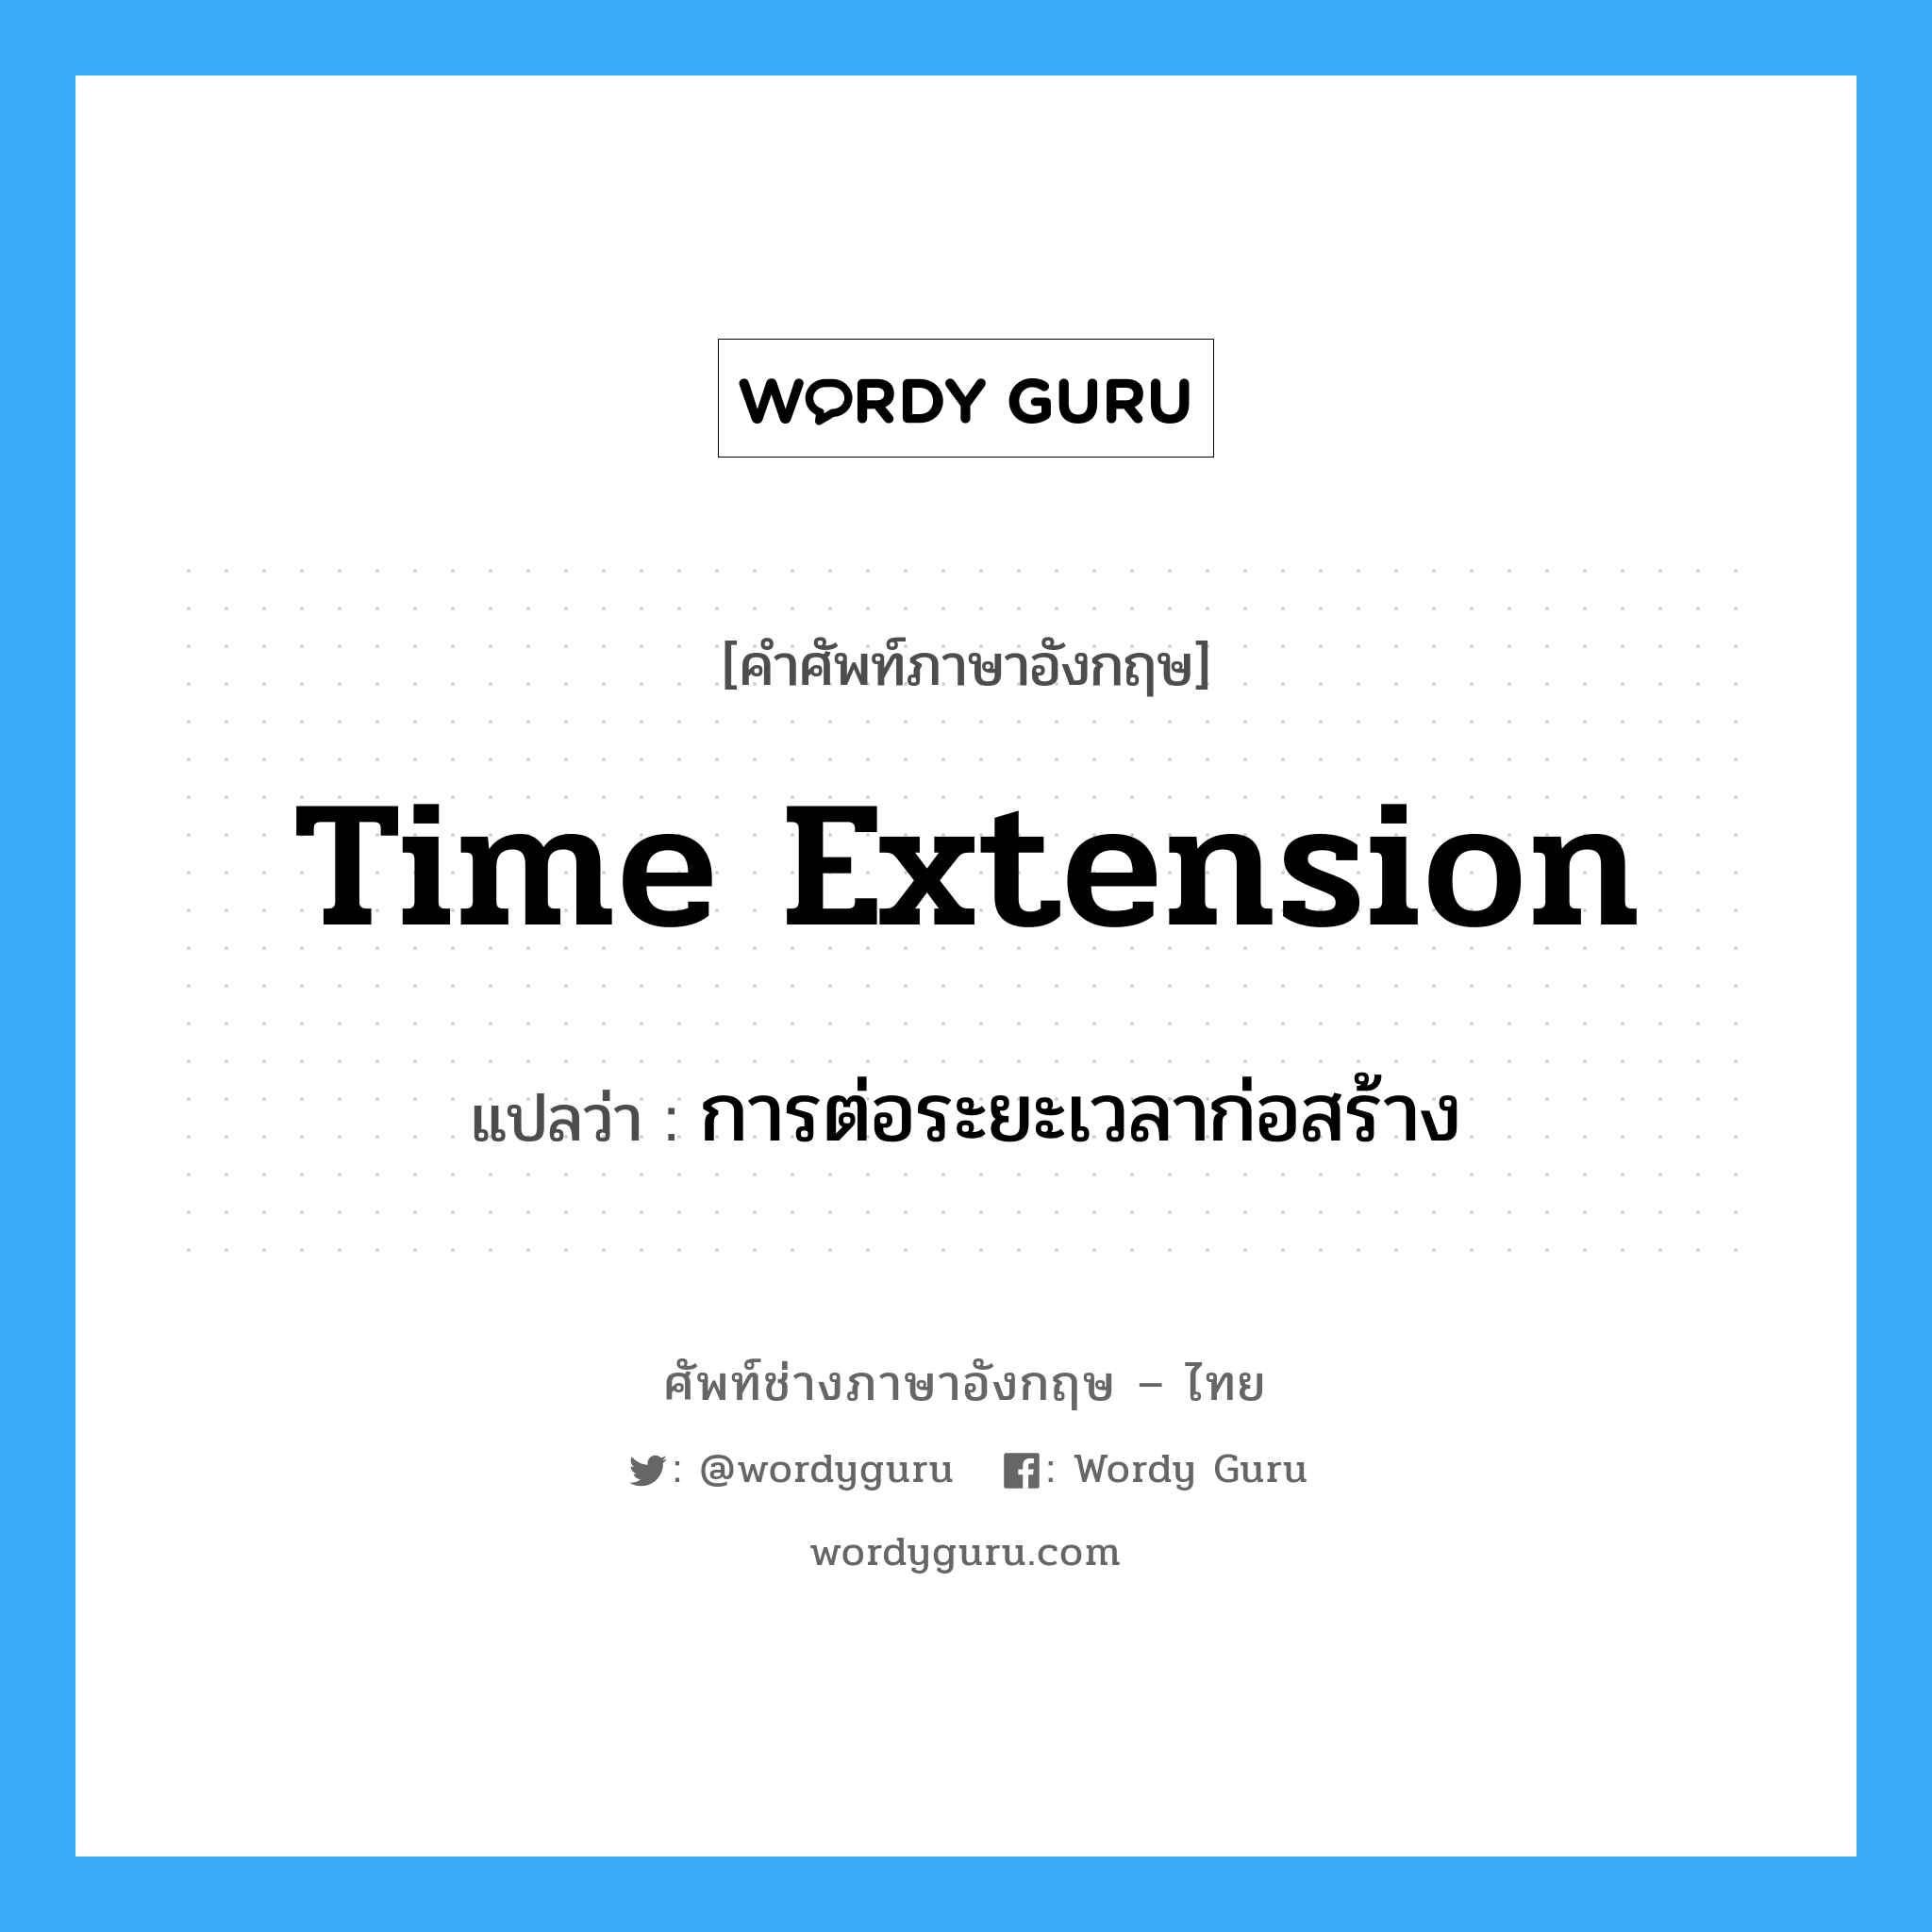 การต่อระยะเวลาก่อสร้าง ภาษาอังกฤษ?, คำศัพท์ช่างภาษาอังกฤษ - ไทย การต่อระยะเวลาก่อสร้าง คำศัพท์ภาษาอังกฤษ การต่อระยะเวลาก่อสร้าง แปลว่า Time Extension